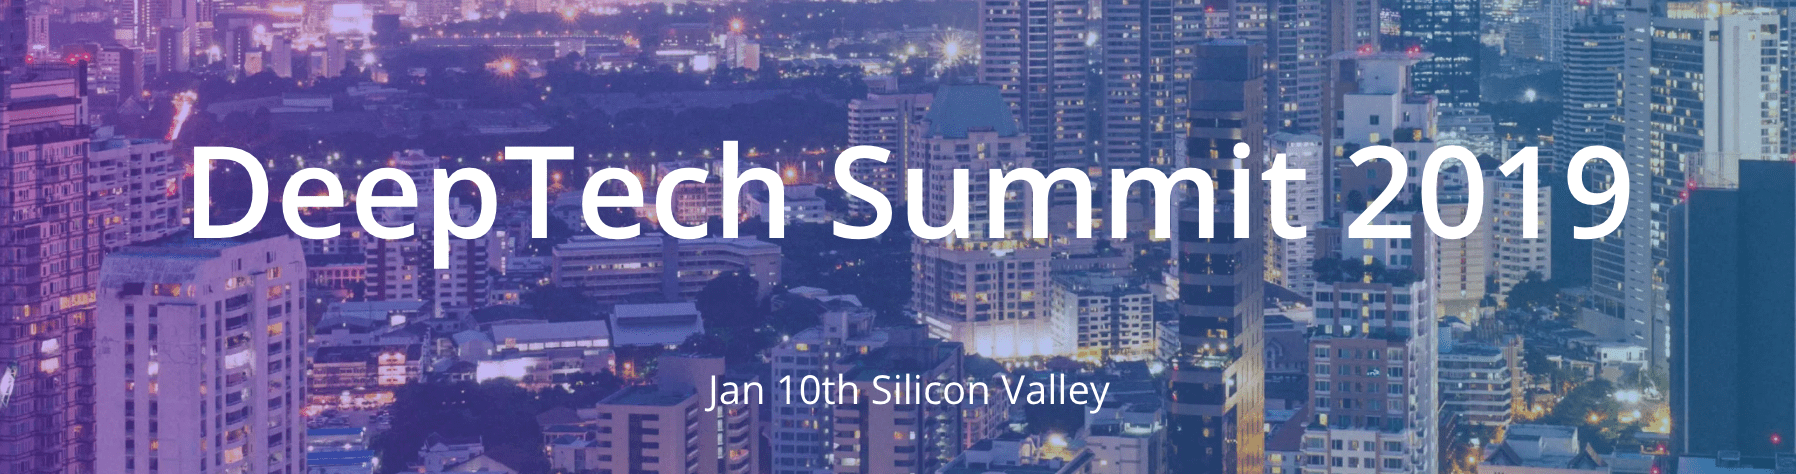 deeptech-summit-2019-logo